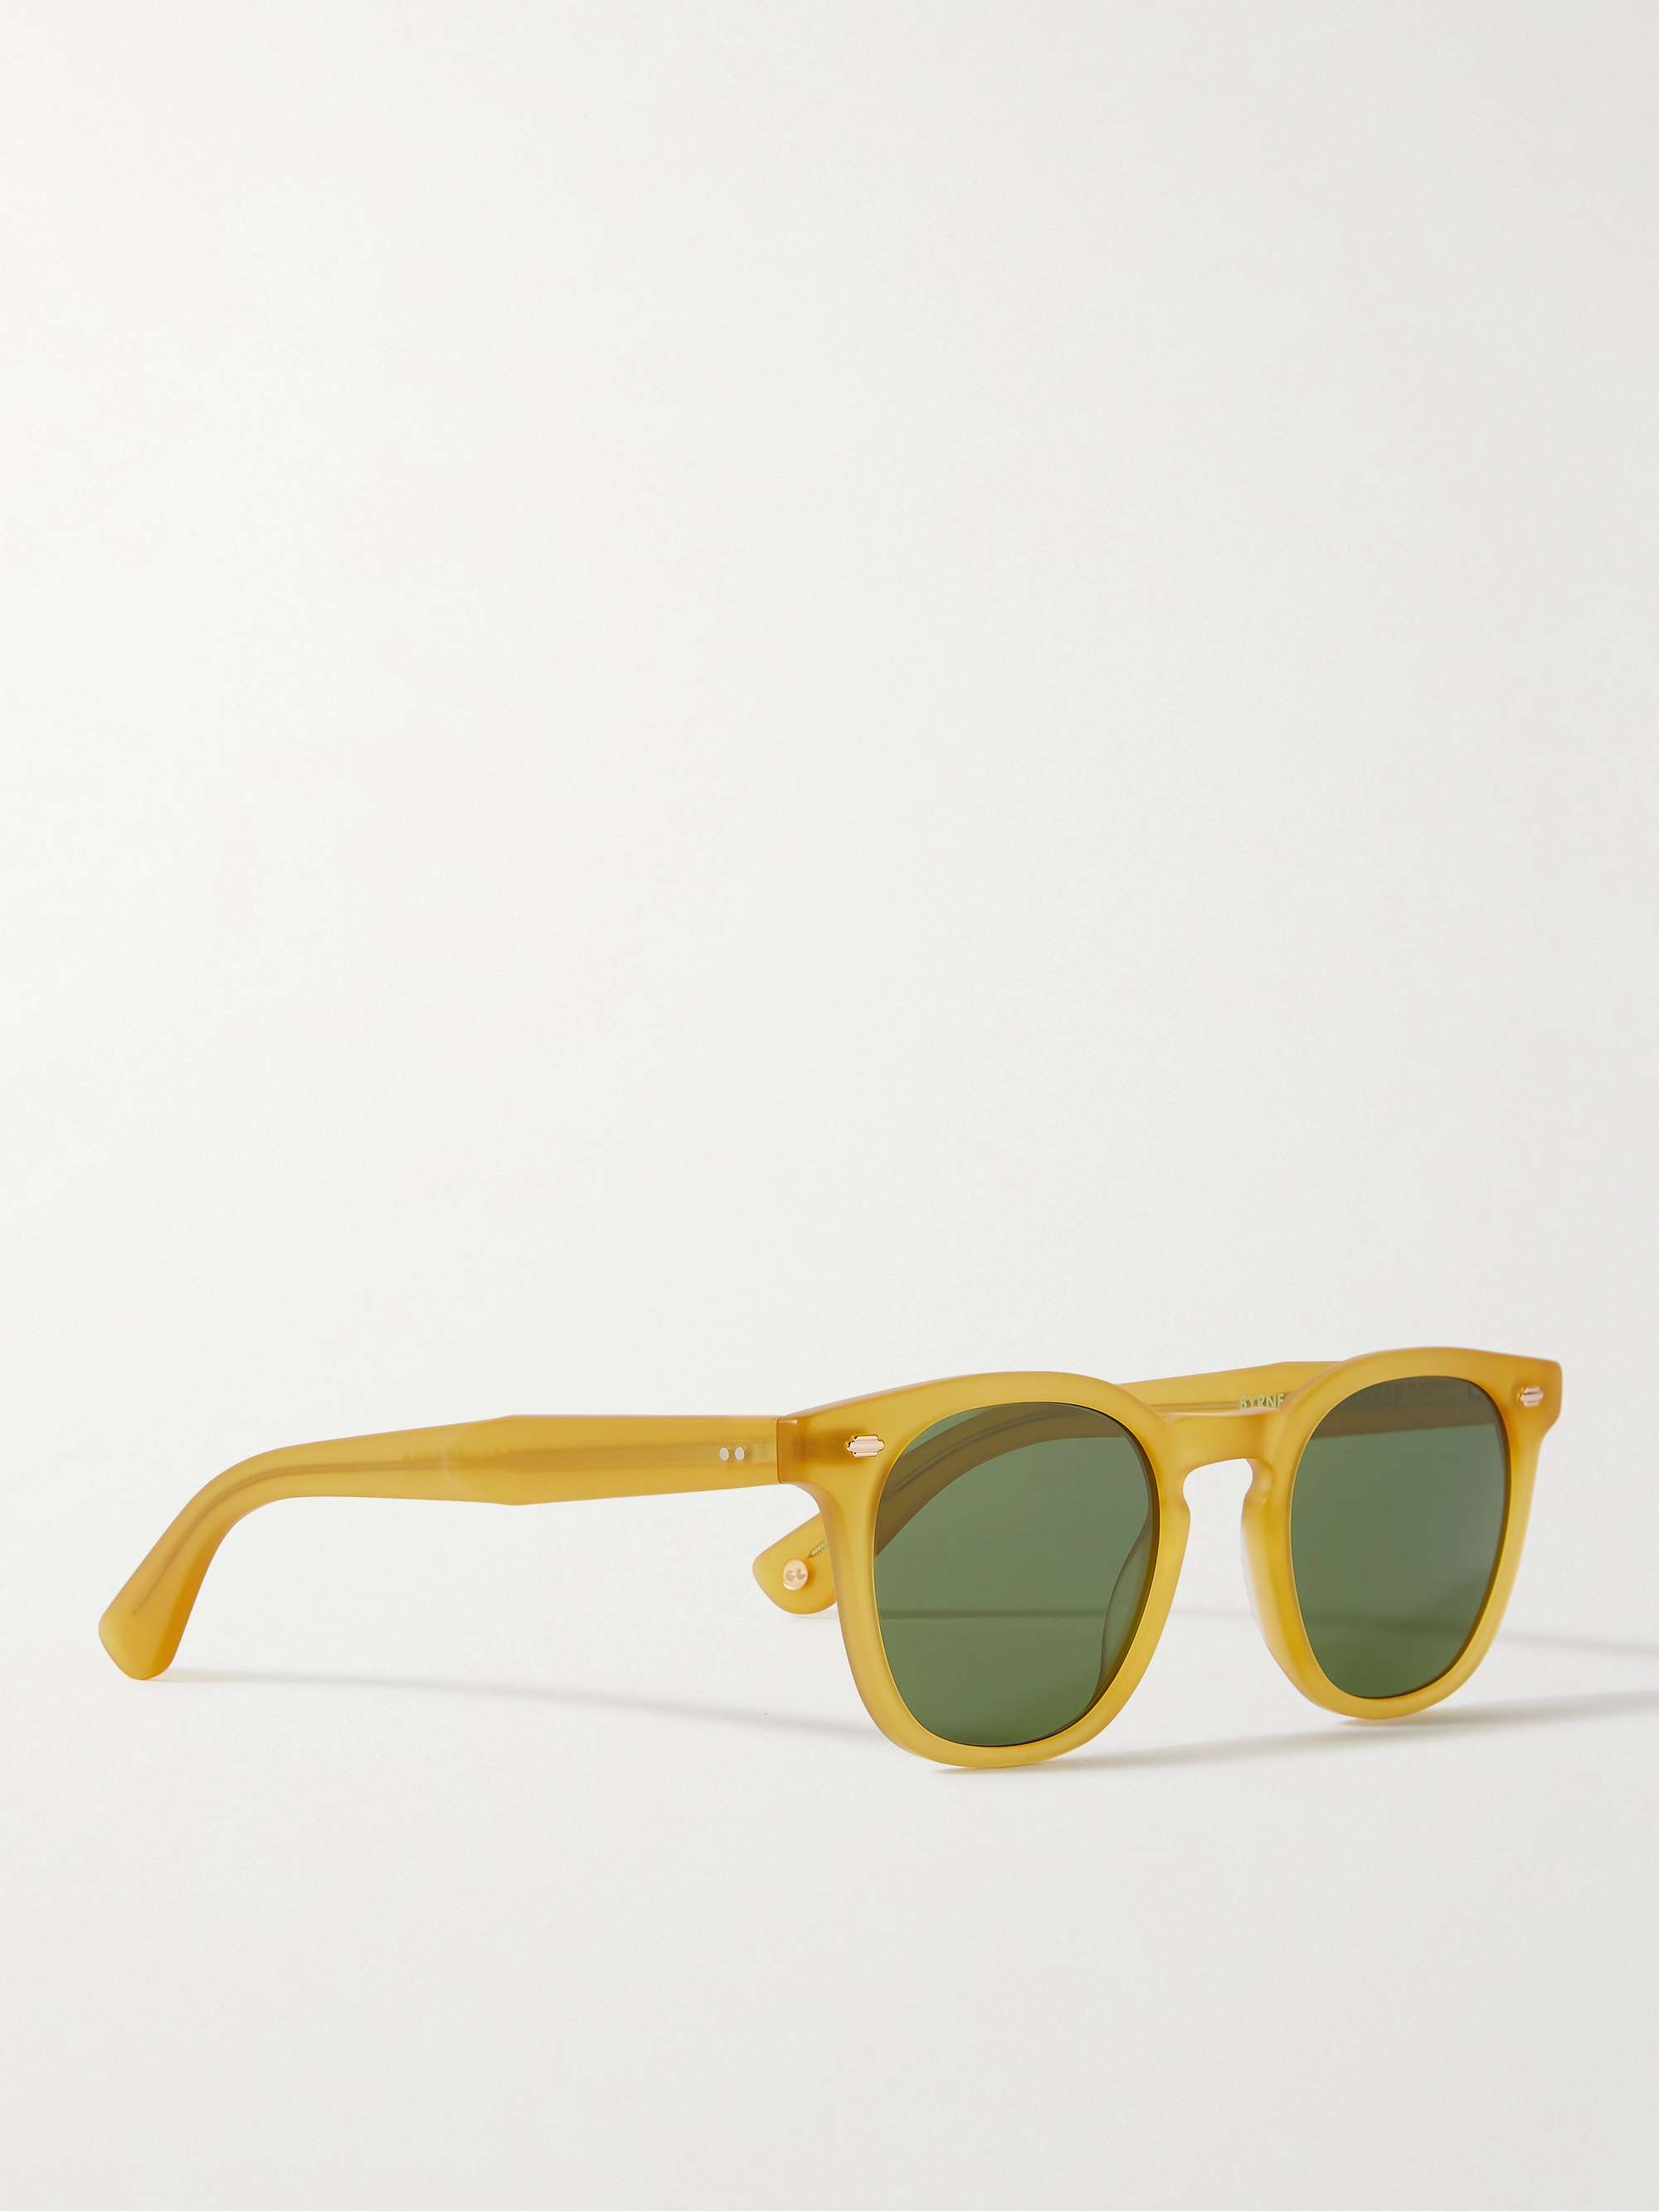 GARRETT LEIGHT CALIFORNIA OPTICAL Byrne Sun Round-Frame Tortoiseshell Acetate Sunglasses